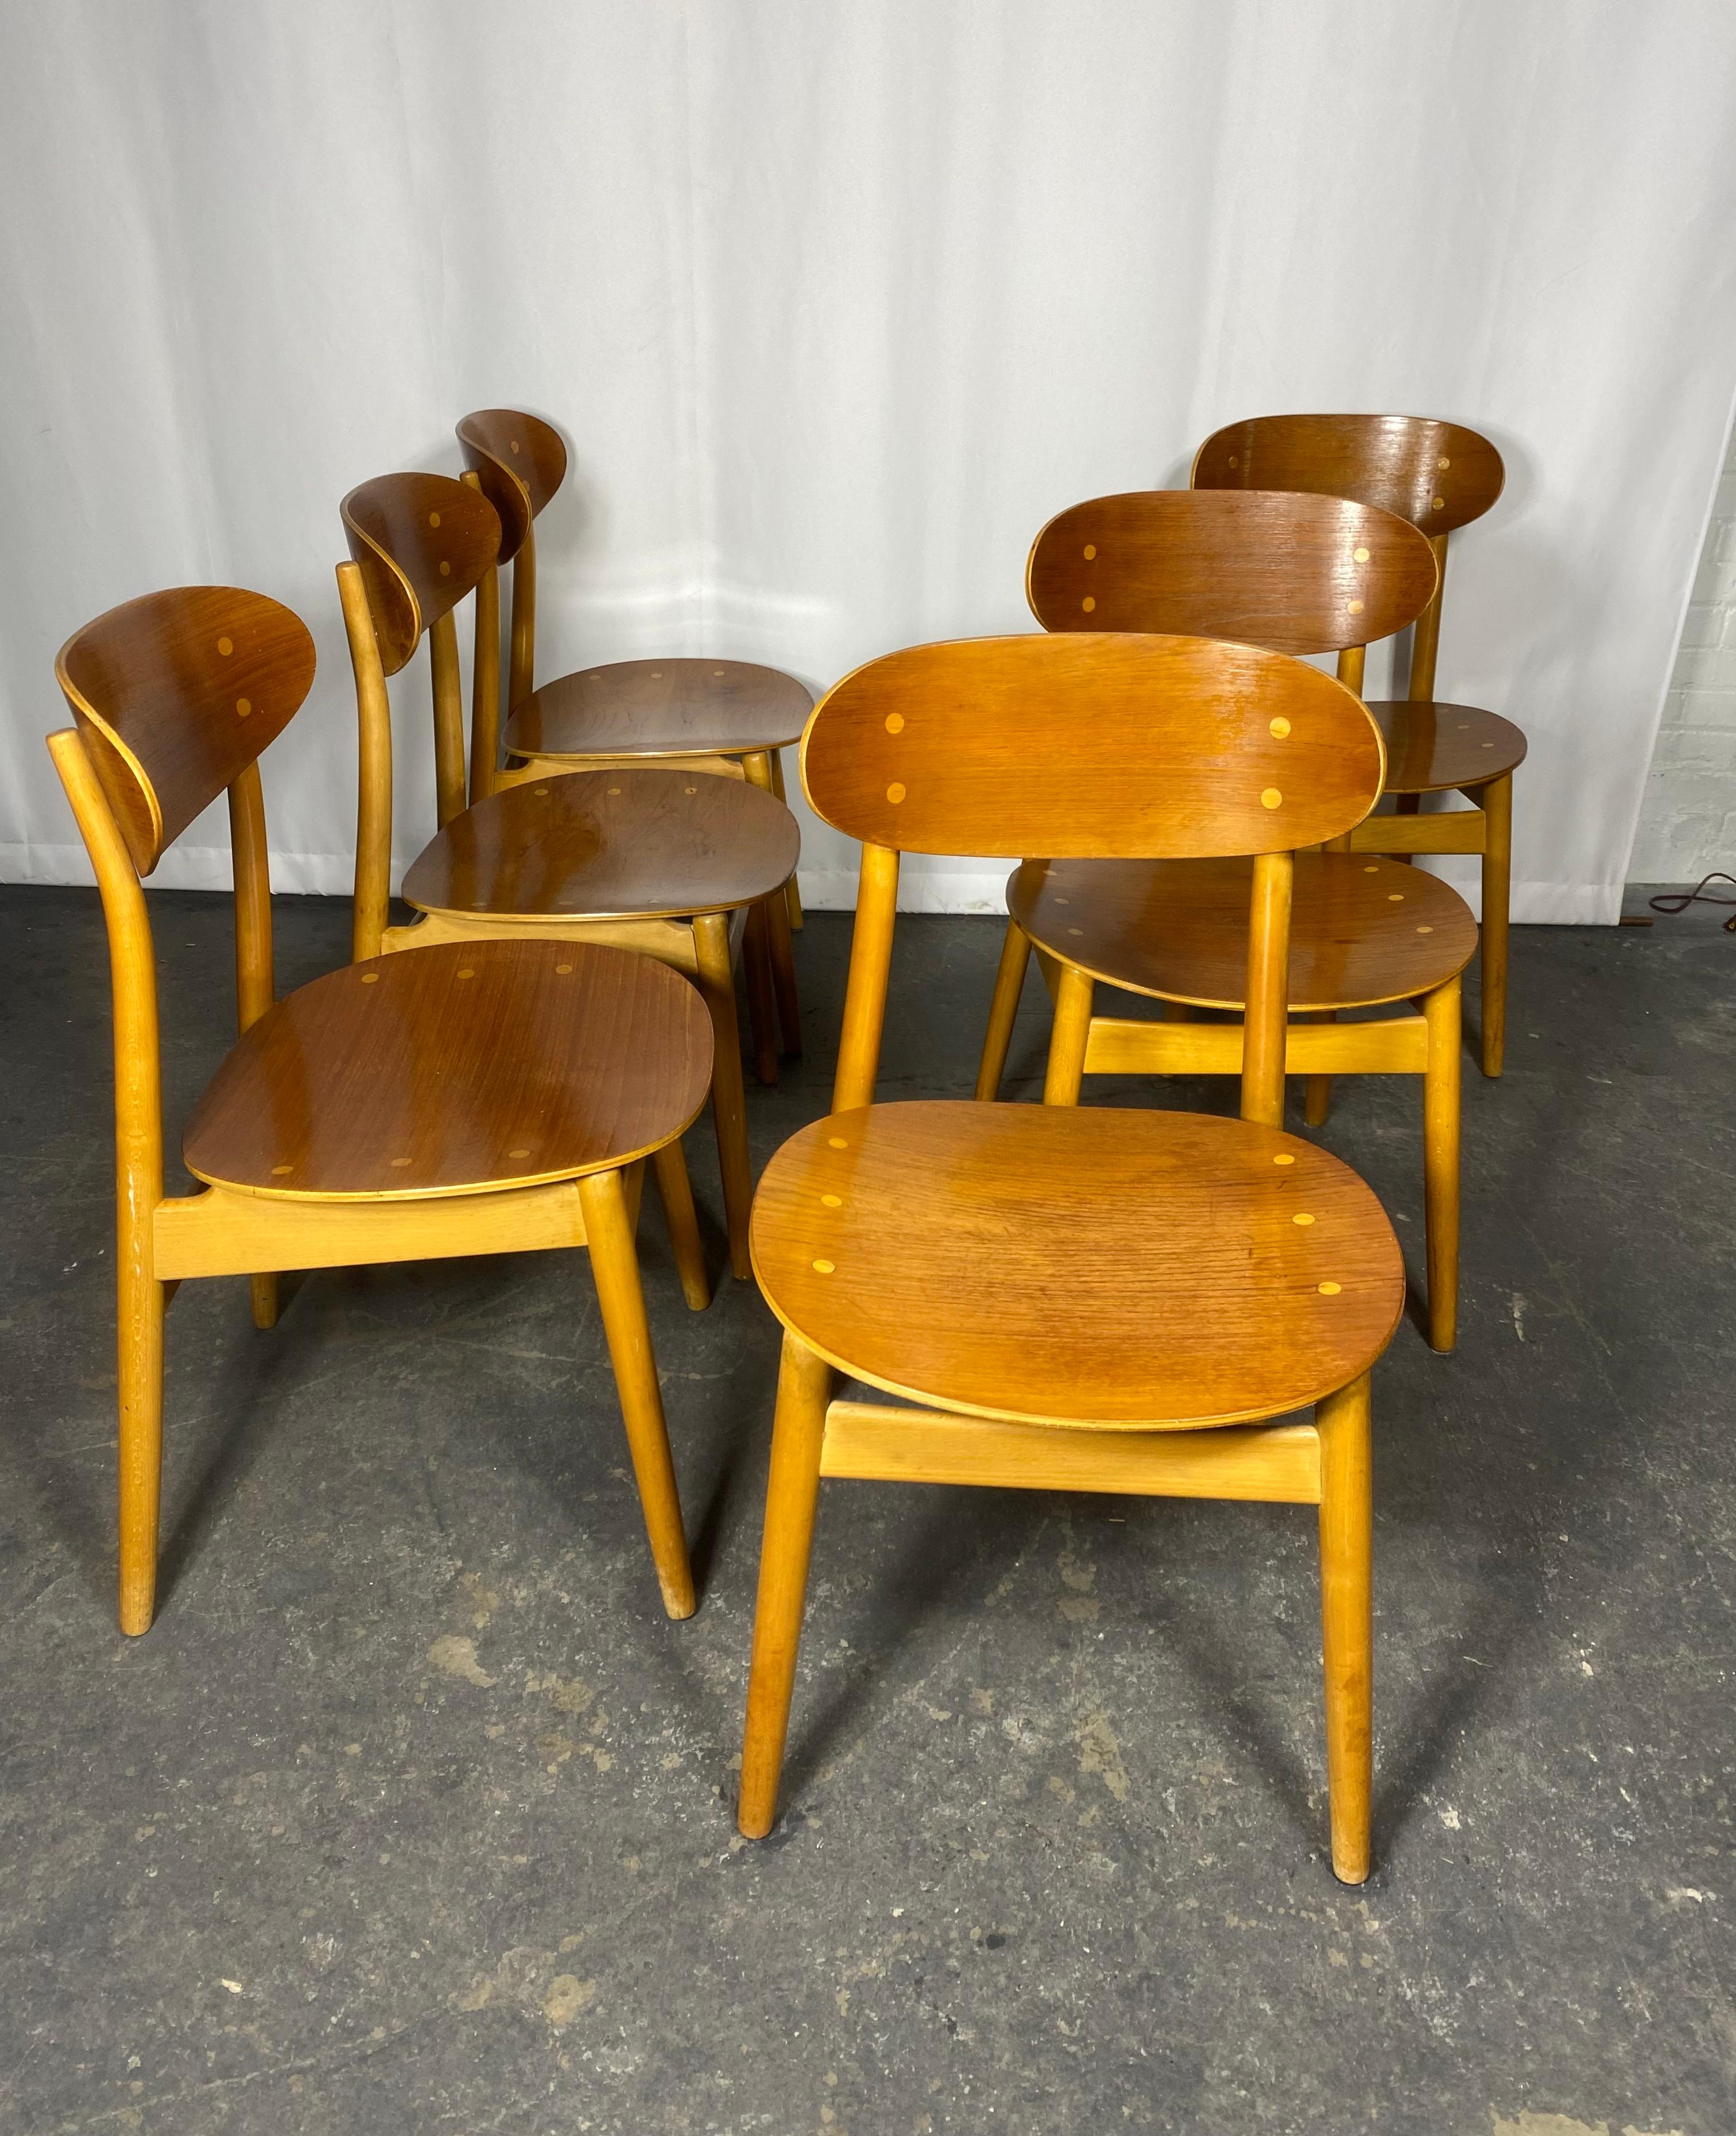 Diese Stühle wurden von Sven Erik Fryklund entworfen und von der schwedischen Firma Hagafors Stolfabrik in den 1960er Jahren hergestellt. Das Gestell ist aus Buchenholz, Sitz und Rückenlehne sind aus gebogenem Teakholz gefertigt. Die Stühle sind